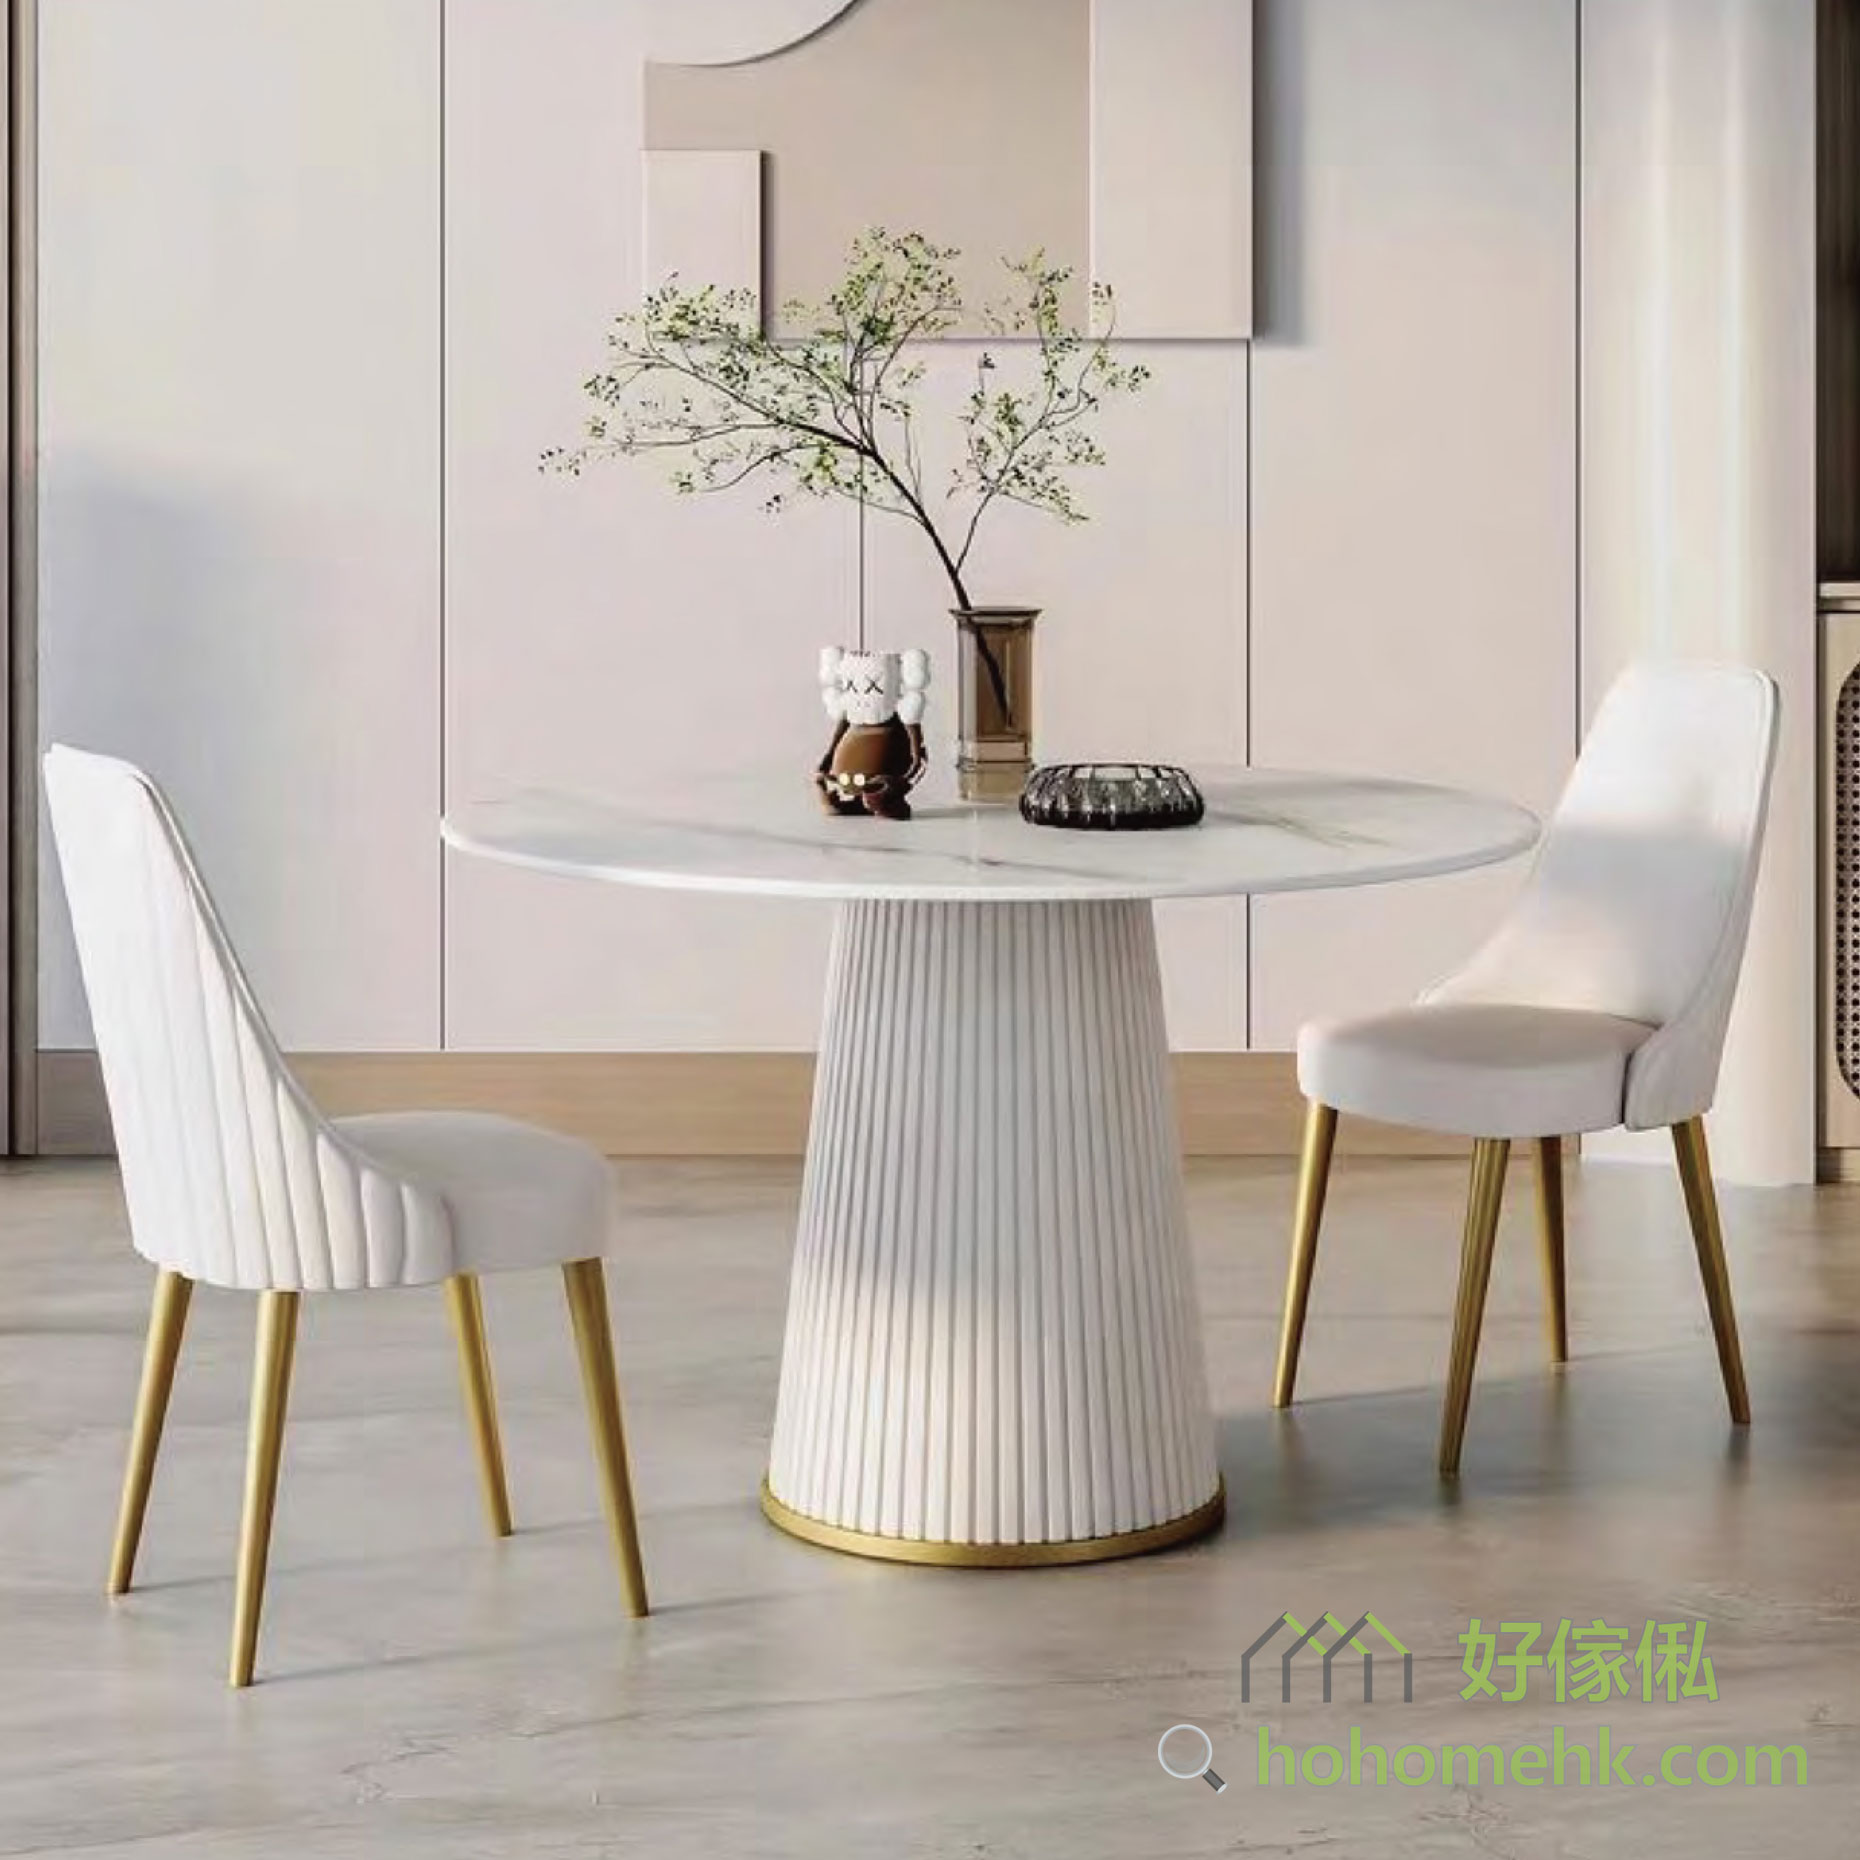 這款奶油風圓形餐桌，將為您的家居帶來時尚與實用的完美結合。 經典圓形設計，時尚大氣：圓形餐桌設計，寓意著團圓和美滿。白色桌面和餐腳簡約大氣，能夠輕鬆融入各種家居風格，為您的用餐空間增添一份優雅與品味。 優質岩板材料，穩固耐用：餐桌經過精心加工，確保其穩固耐用。啞光白色的桌腳光滑細膩，經久耐用，讓您與家人安心享受每一次用餐時光。